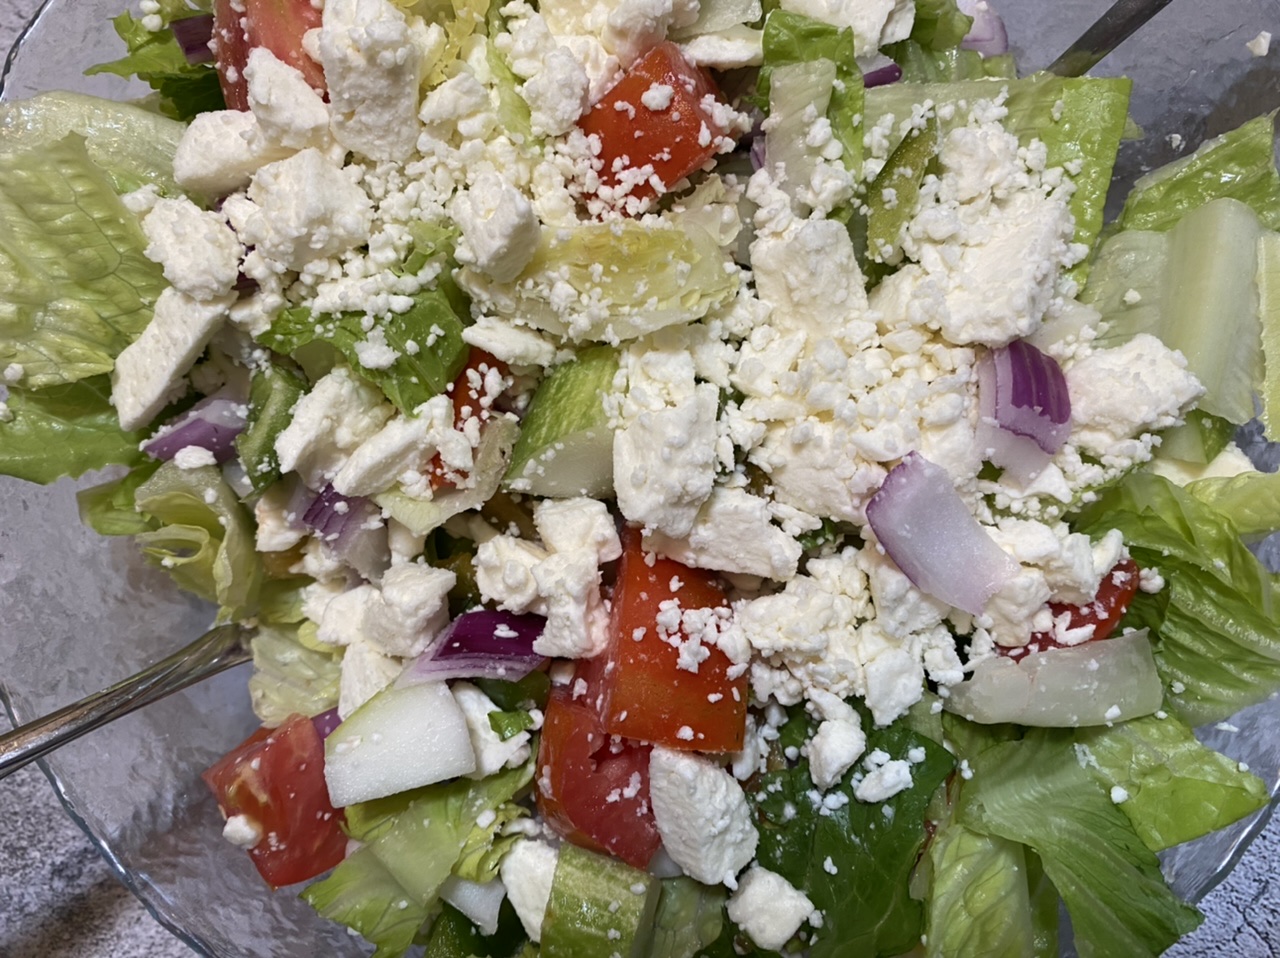 BE0627BD 55F6 4B8A 98CD 9CDD9490D290 - Super Easy, Quick, & Delicious Greek Salad